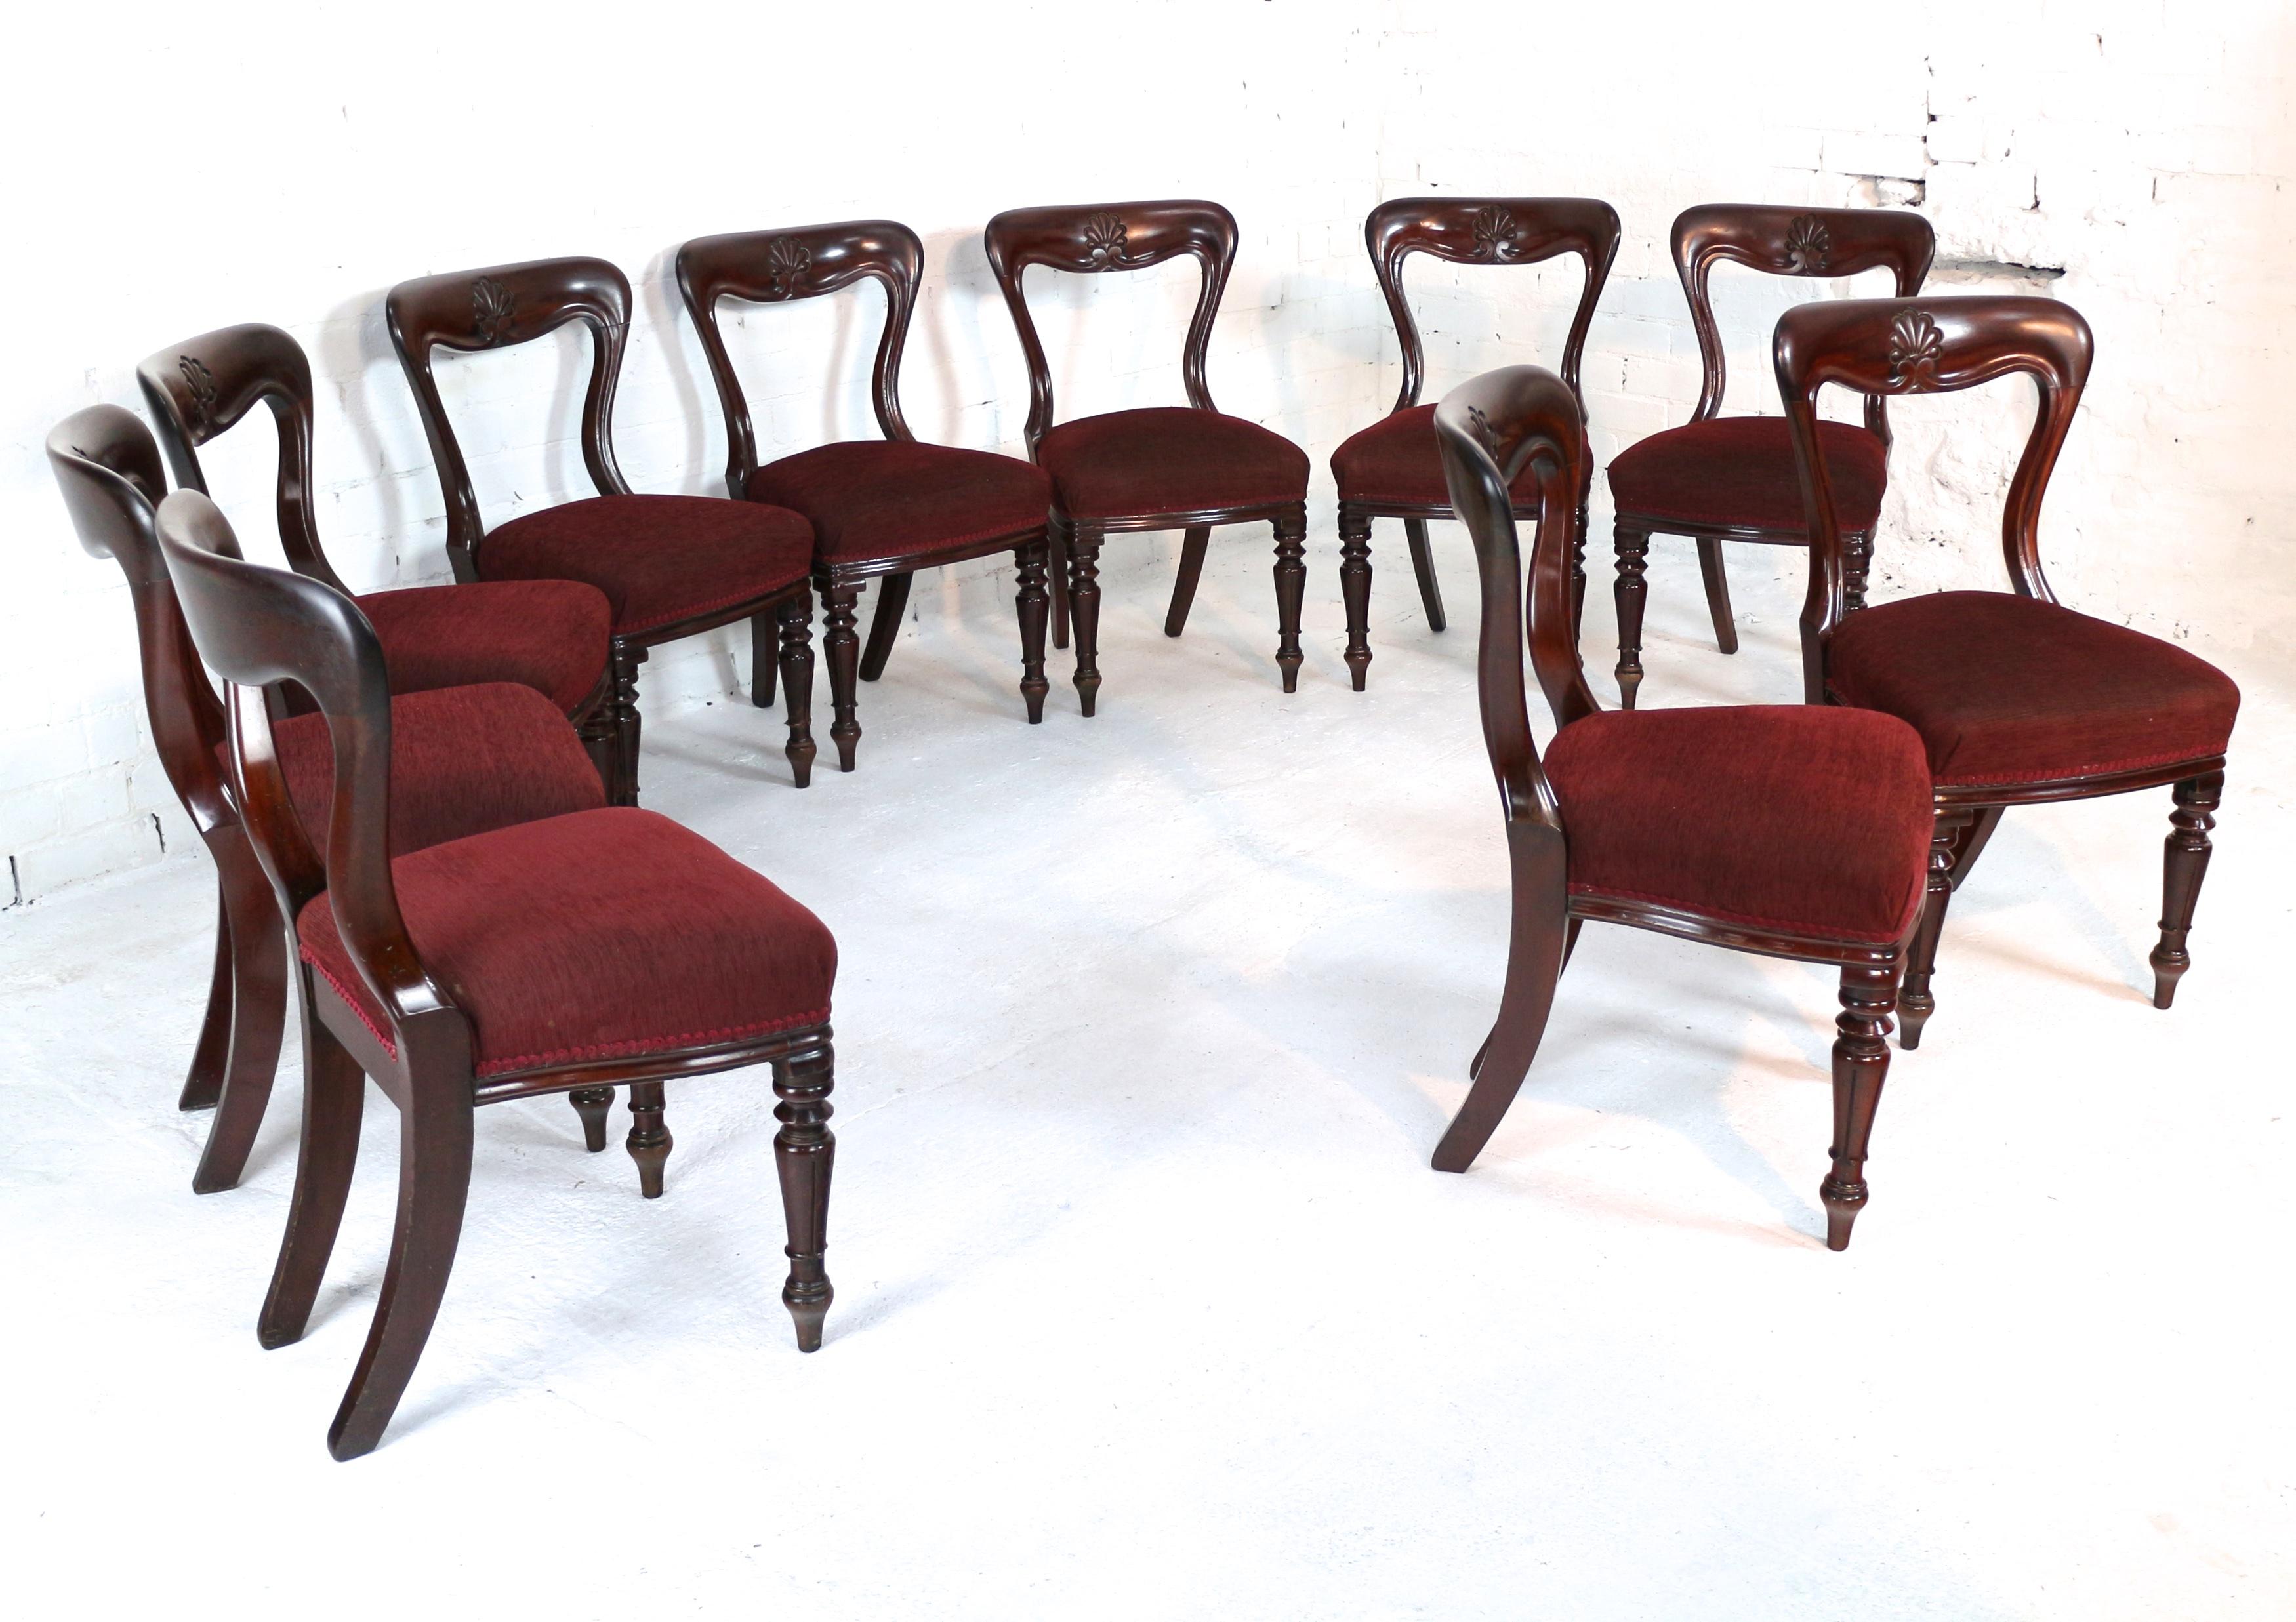 Ein fantastischer Satz von zehn William IV Mahagoni-Esszimmerstühlen aus der Zeit um 1830 und von J. Proctor. Sie sind schwerer als die Standardstühle dieses Modells. Die taillierte Ballonlehne hat eine tiefe, konkav geformte Oberschiene, in deren